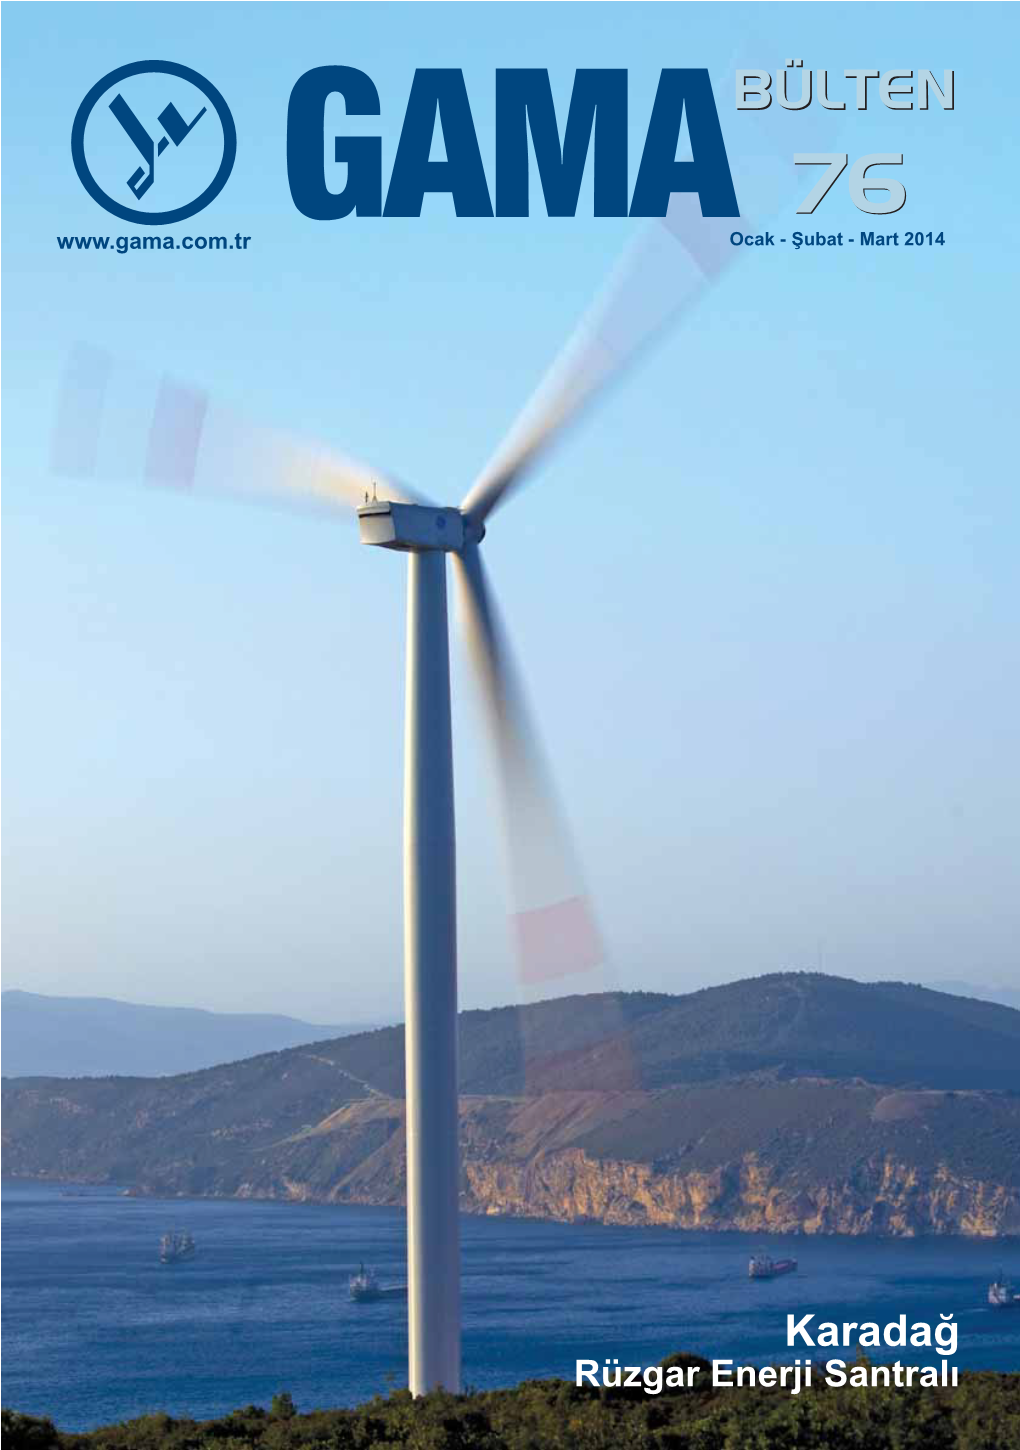 Karadağ Rüzgar Enerji Santralı GAMA BÜLTEN OCAK - ŞUBAT - MART 2014 SAYI: 76